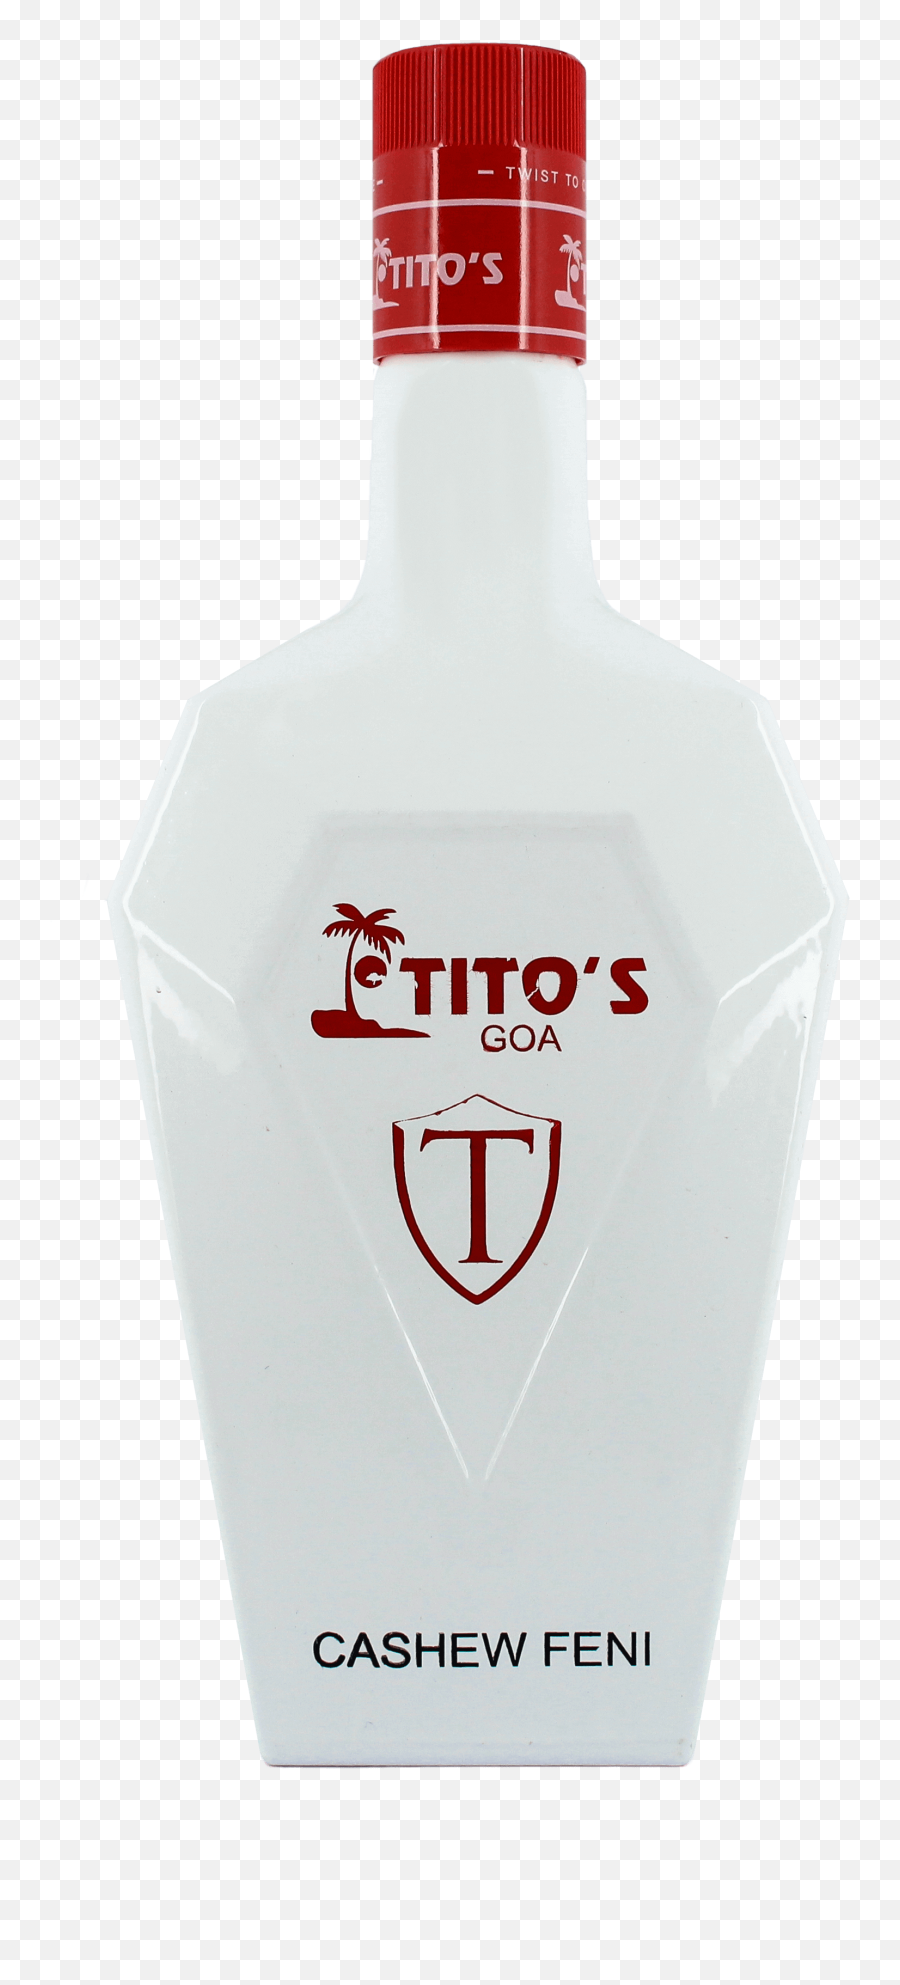 Download Titos Vodka Png - Goa,Titos Png